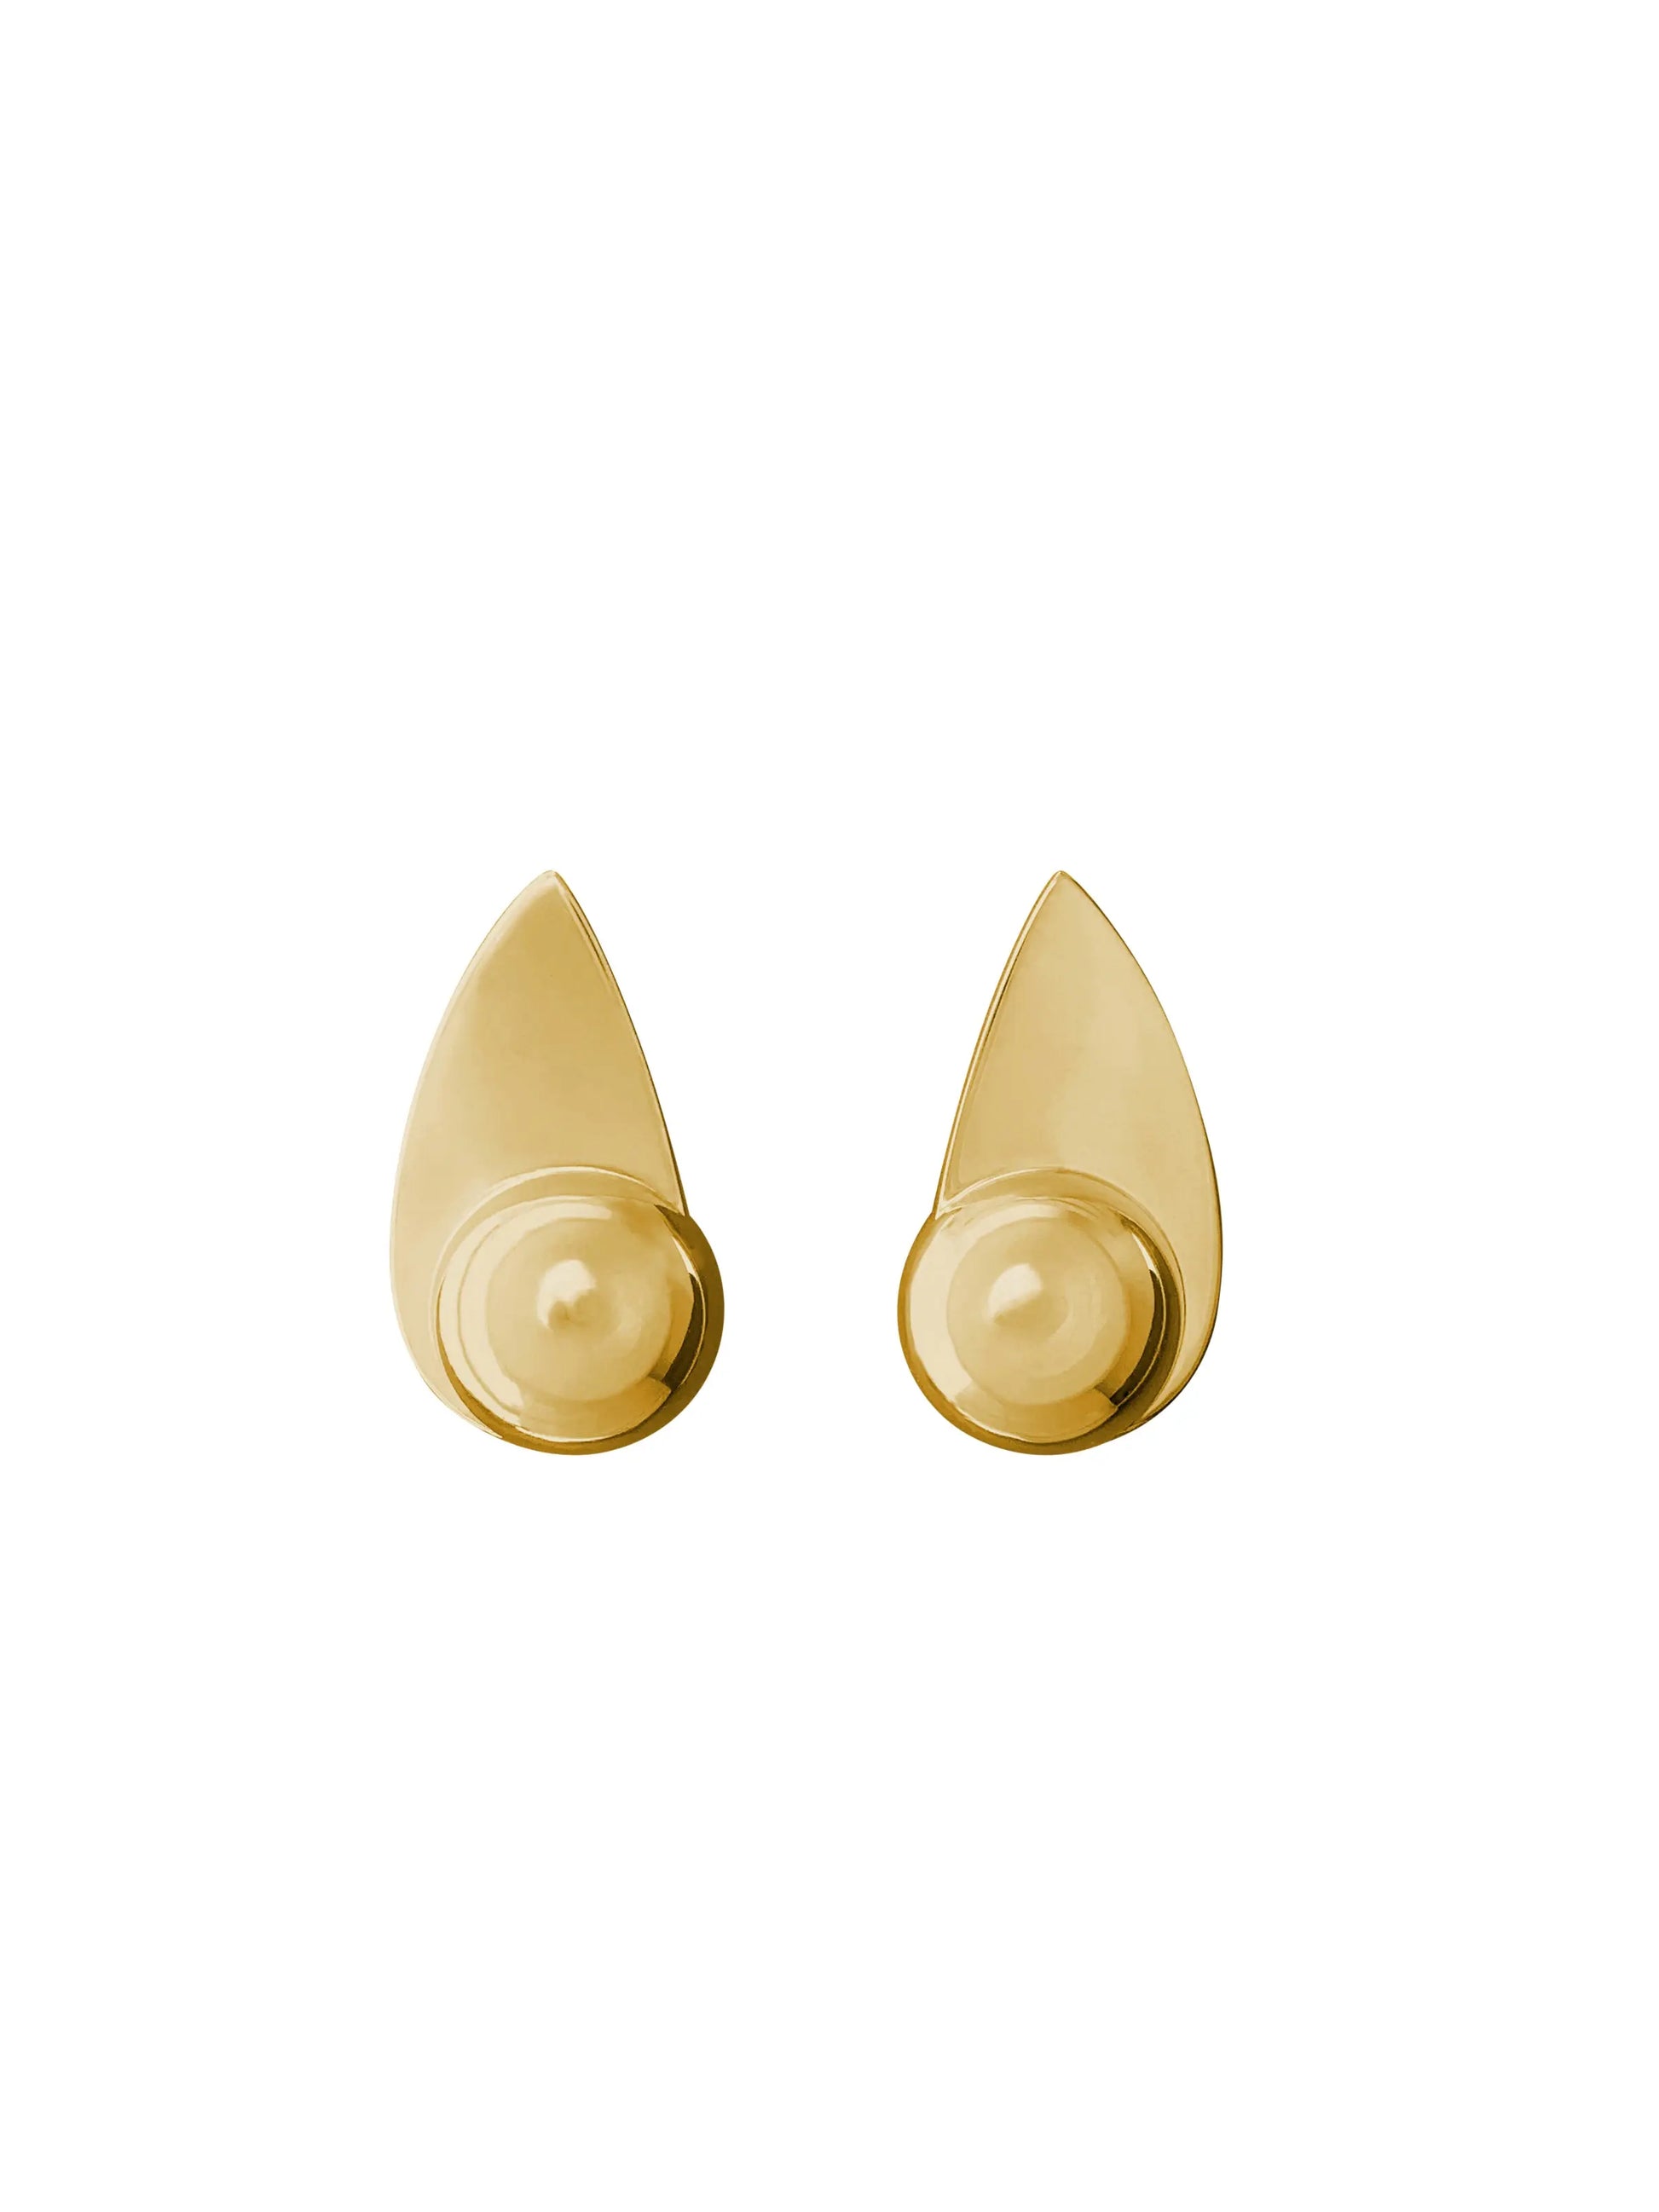 Spring Earrings In Gold Vermeil Sara Robertsson Jewellery